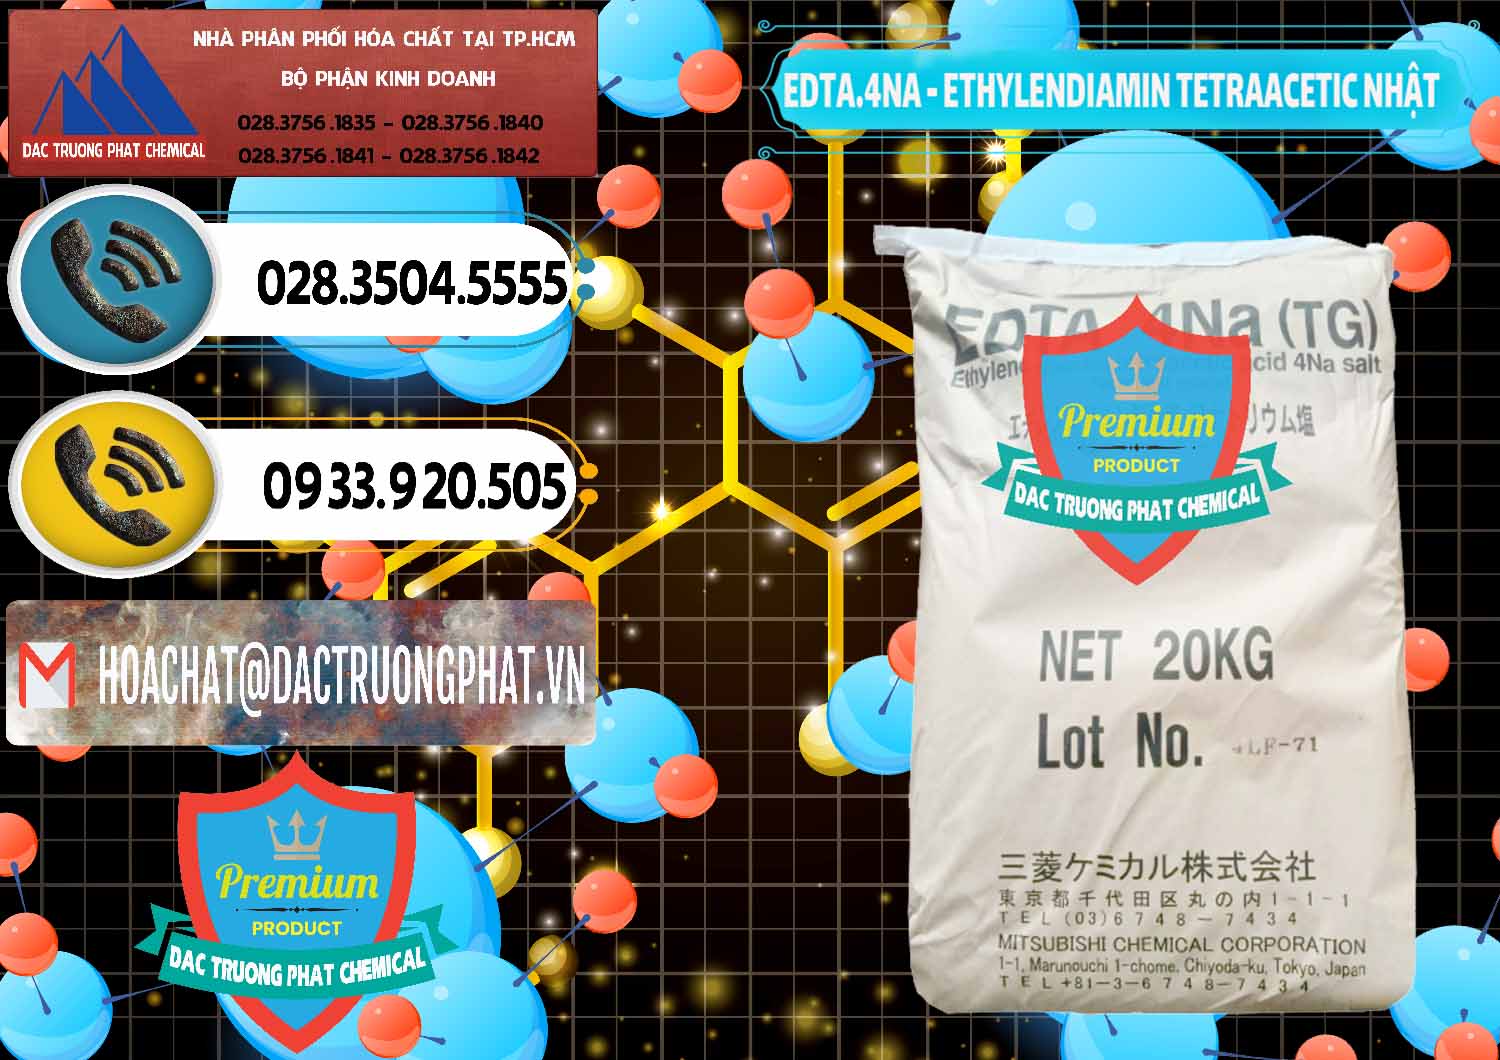 Đơn vị chuyên bán _ cung cấp EDTA 4Na - Ethylendiamin Tetraacetic Nhật Bản Japan - 0482 - Đơn vị chuyên bán & phân phối hóa chất tại TP.HCM - hoachatdetnhuom.vn